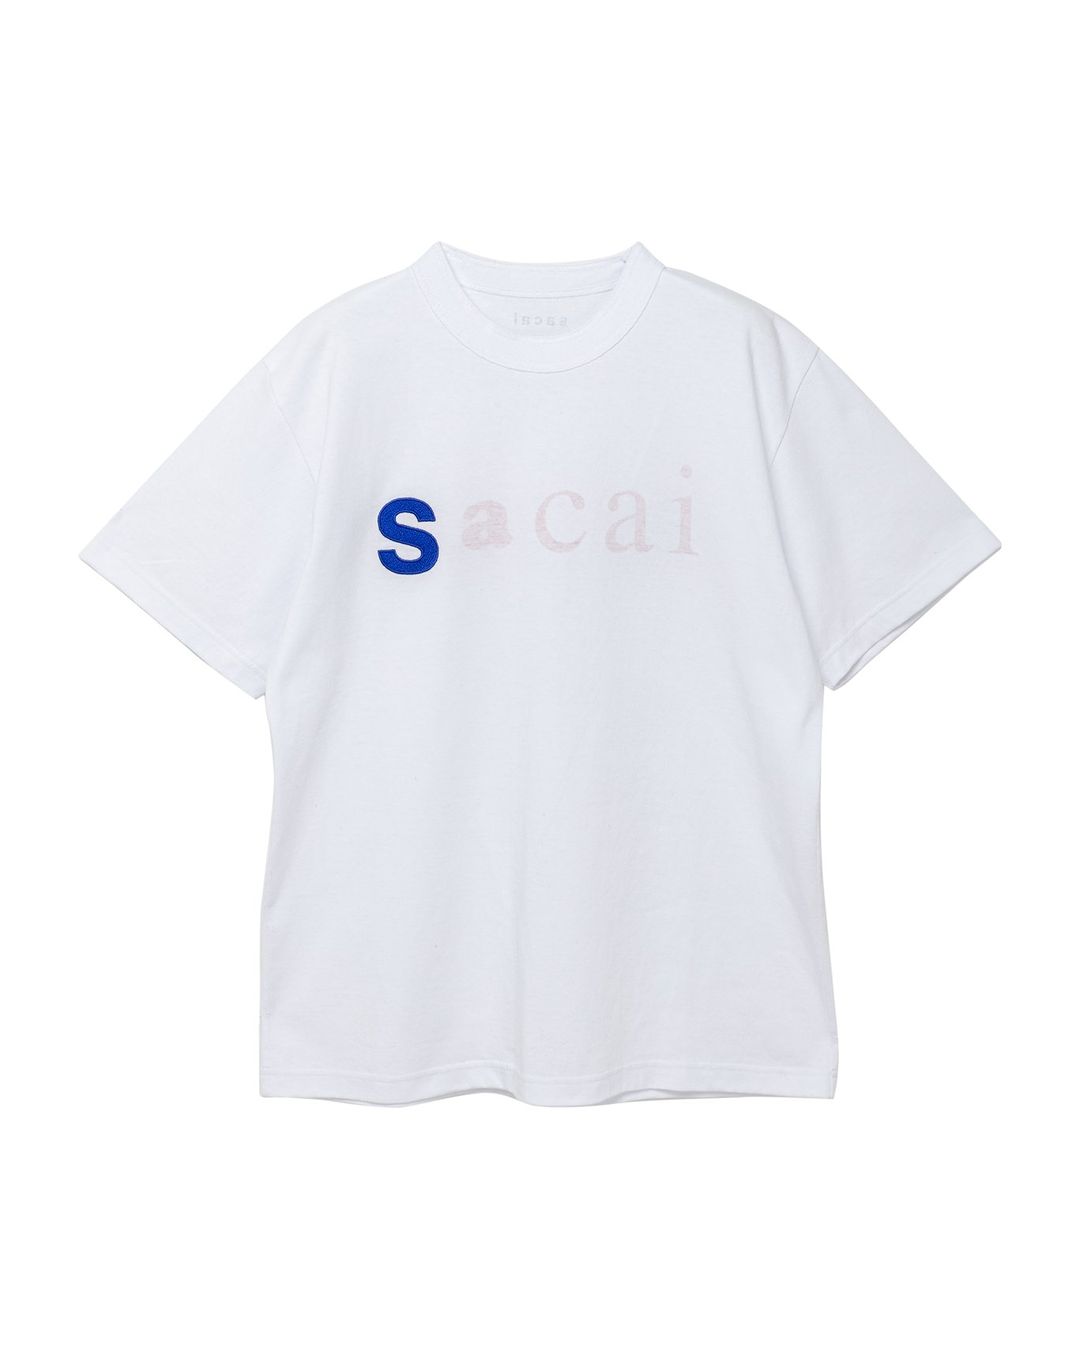 sacai Aoyama Exclusive T-Shirtにてリニューアルオープン記念限定TEE